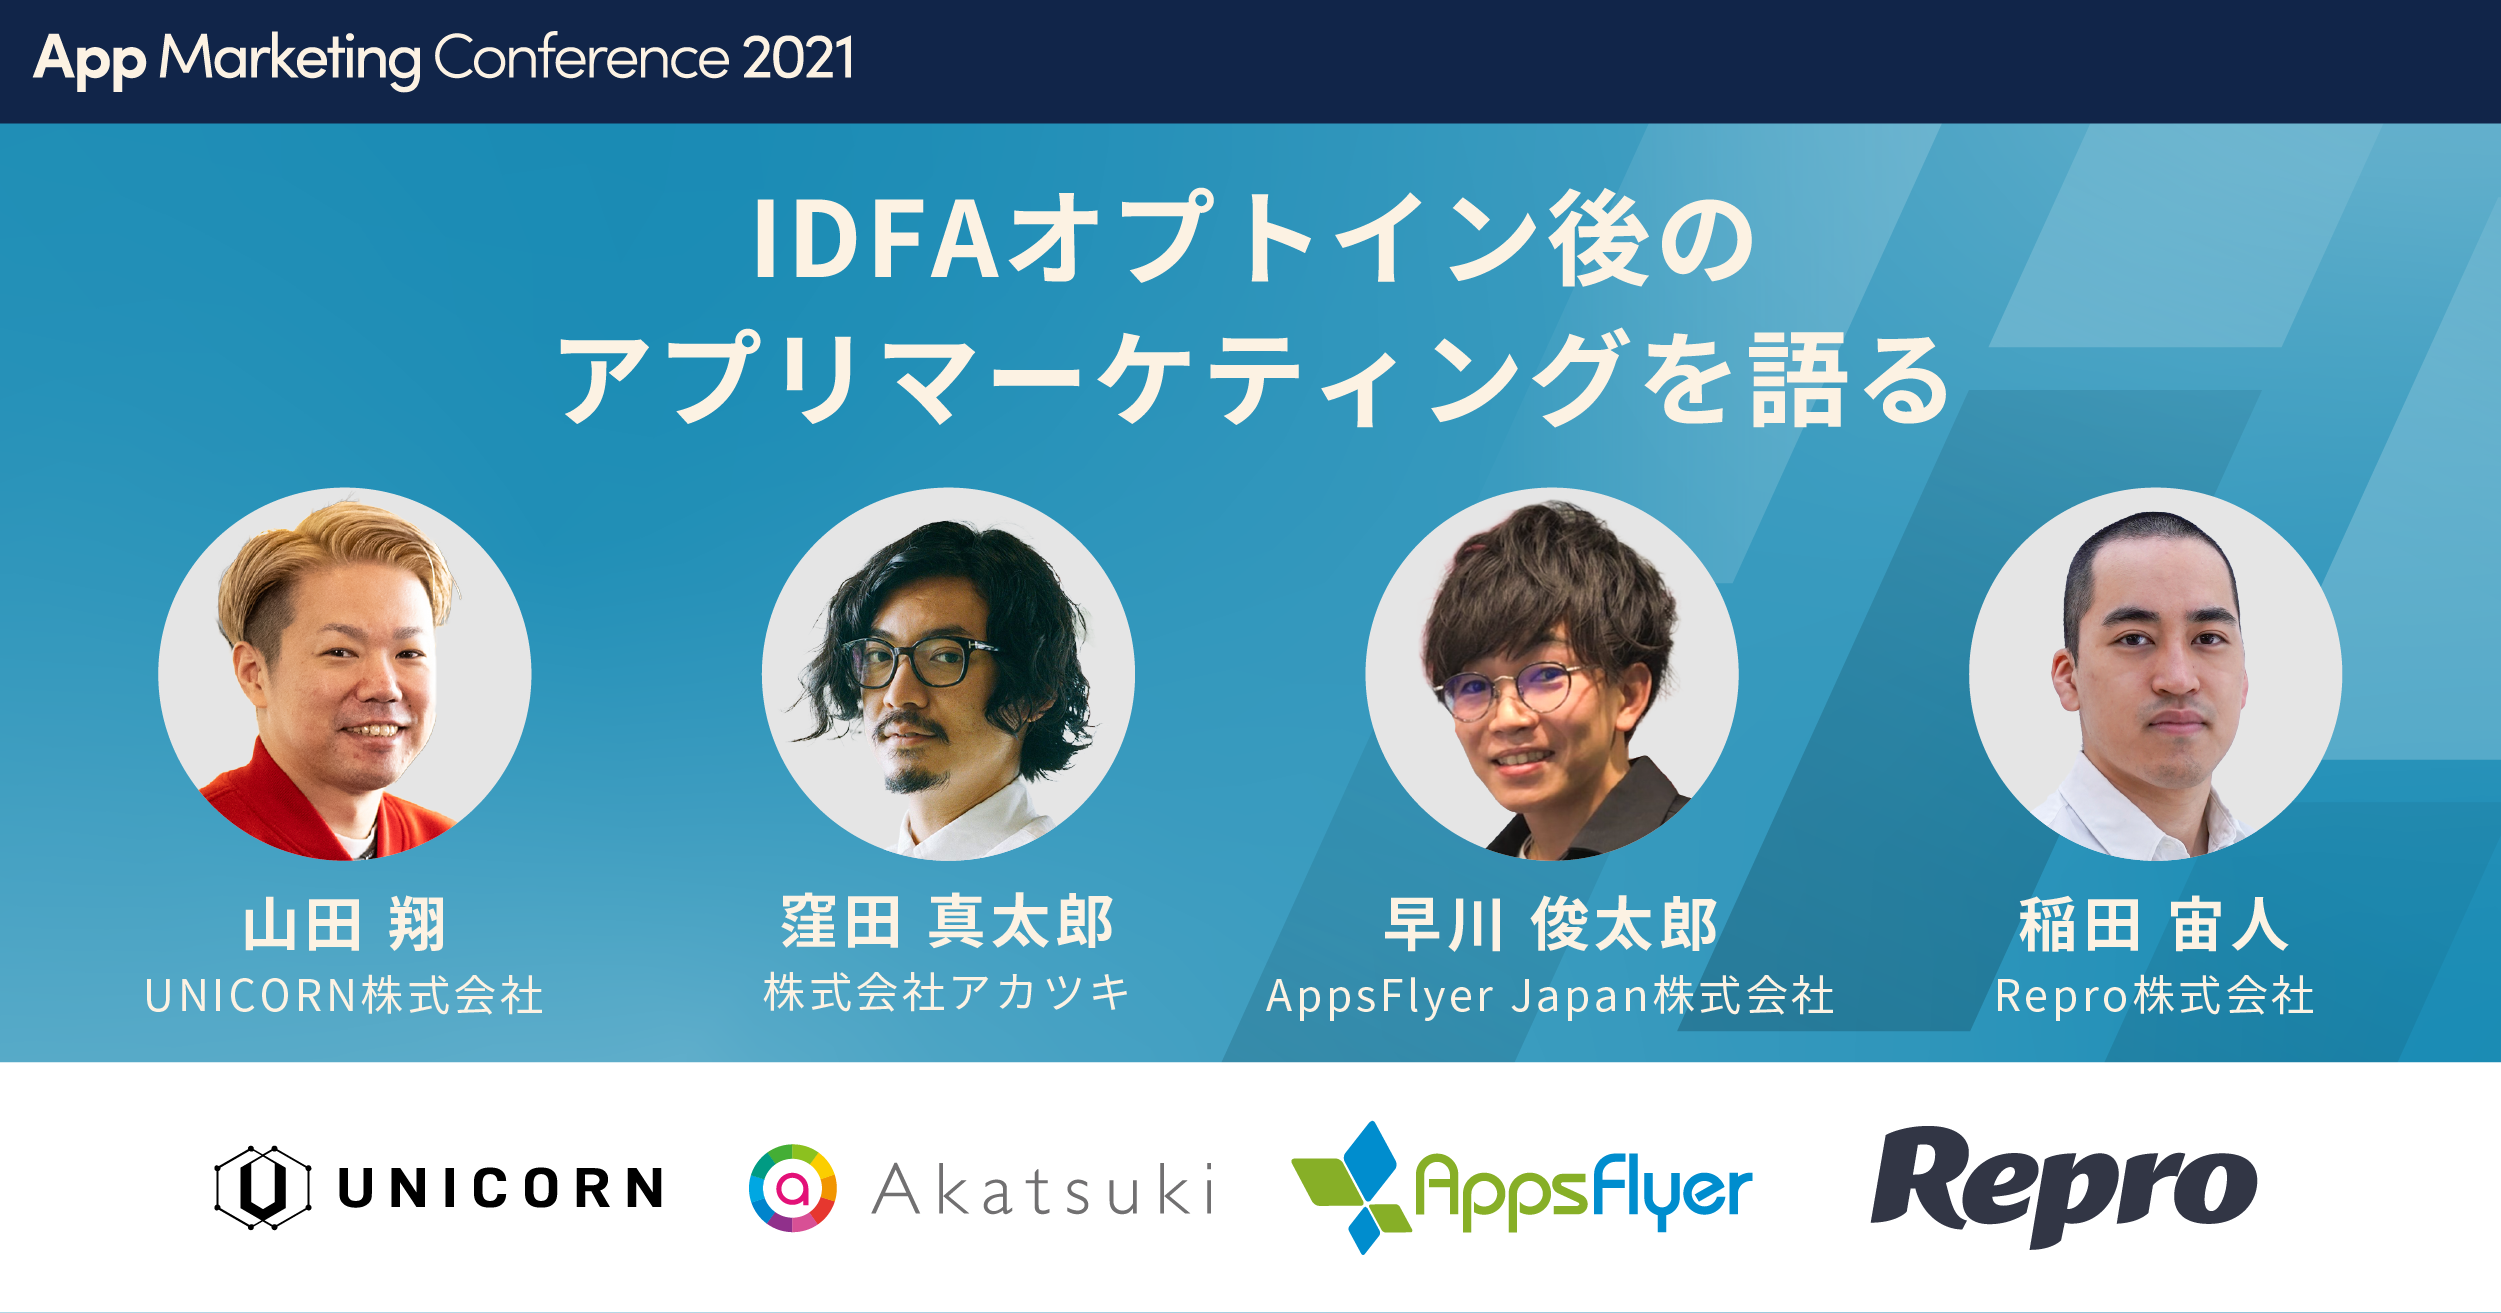 IDFAオプトイン後のアプリマーケティングを語る【App Marketing Conference 2021】